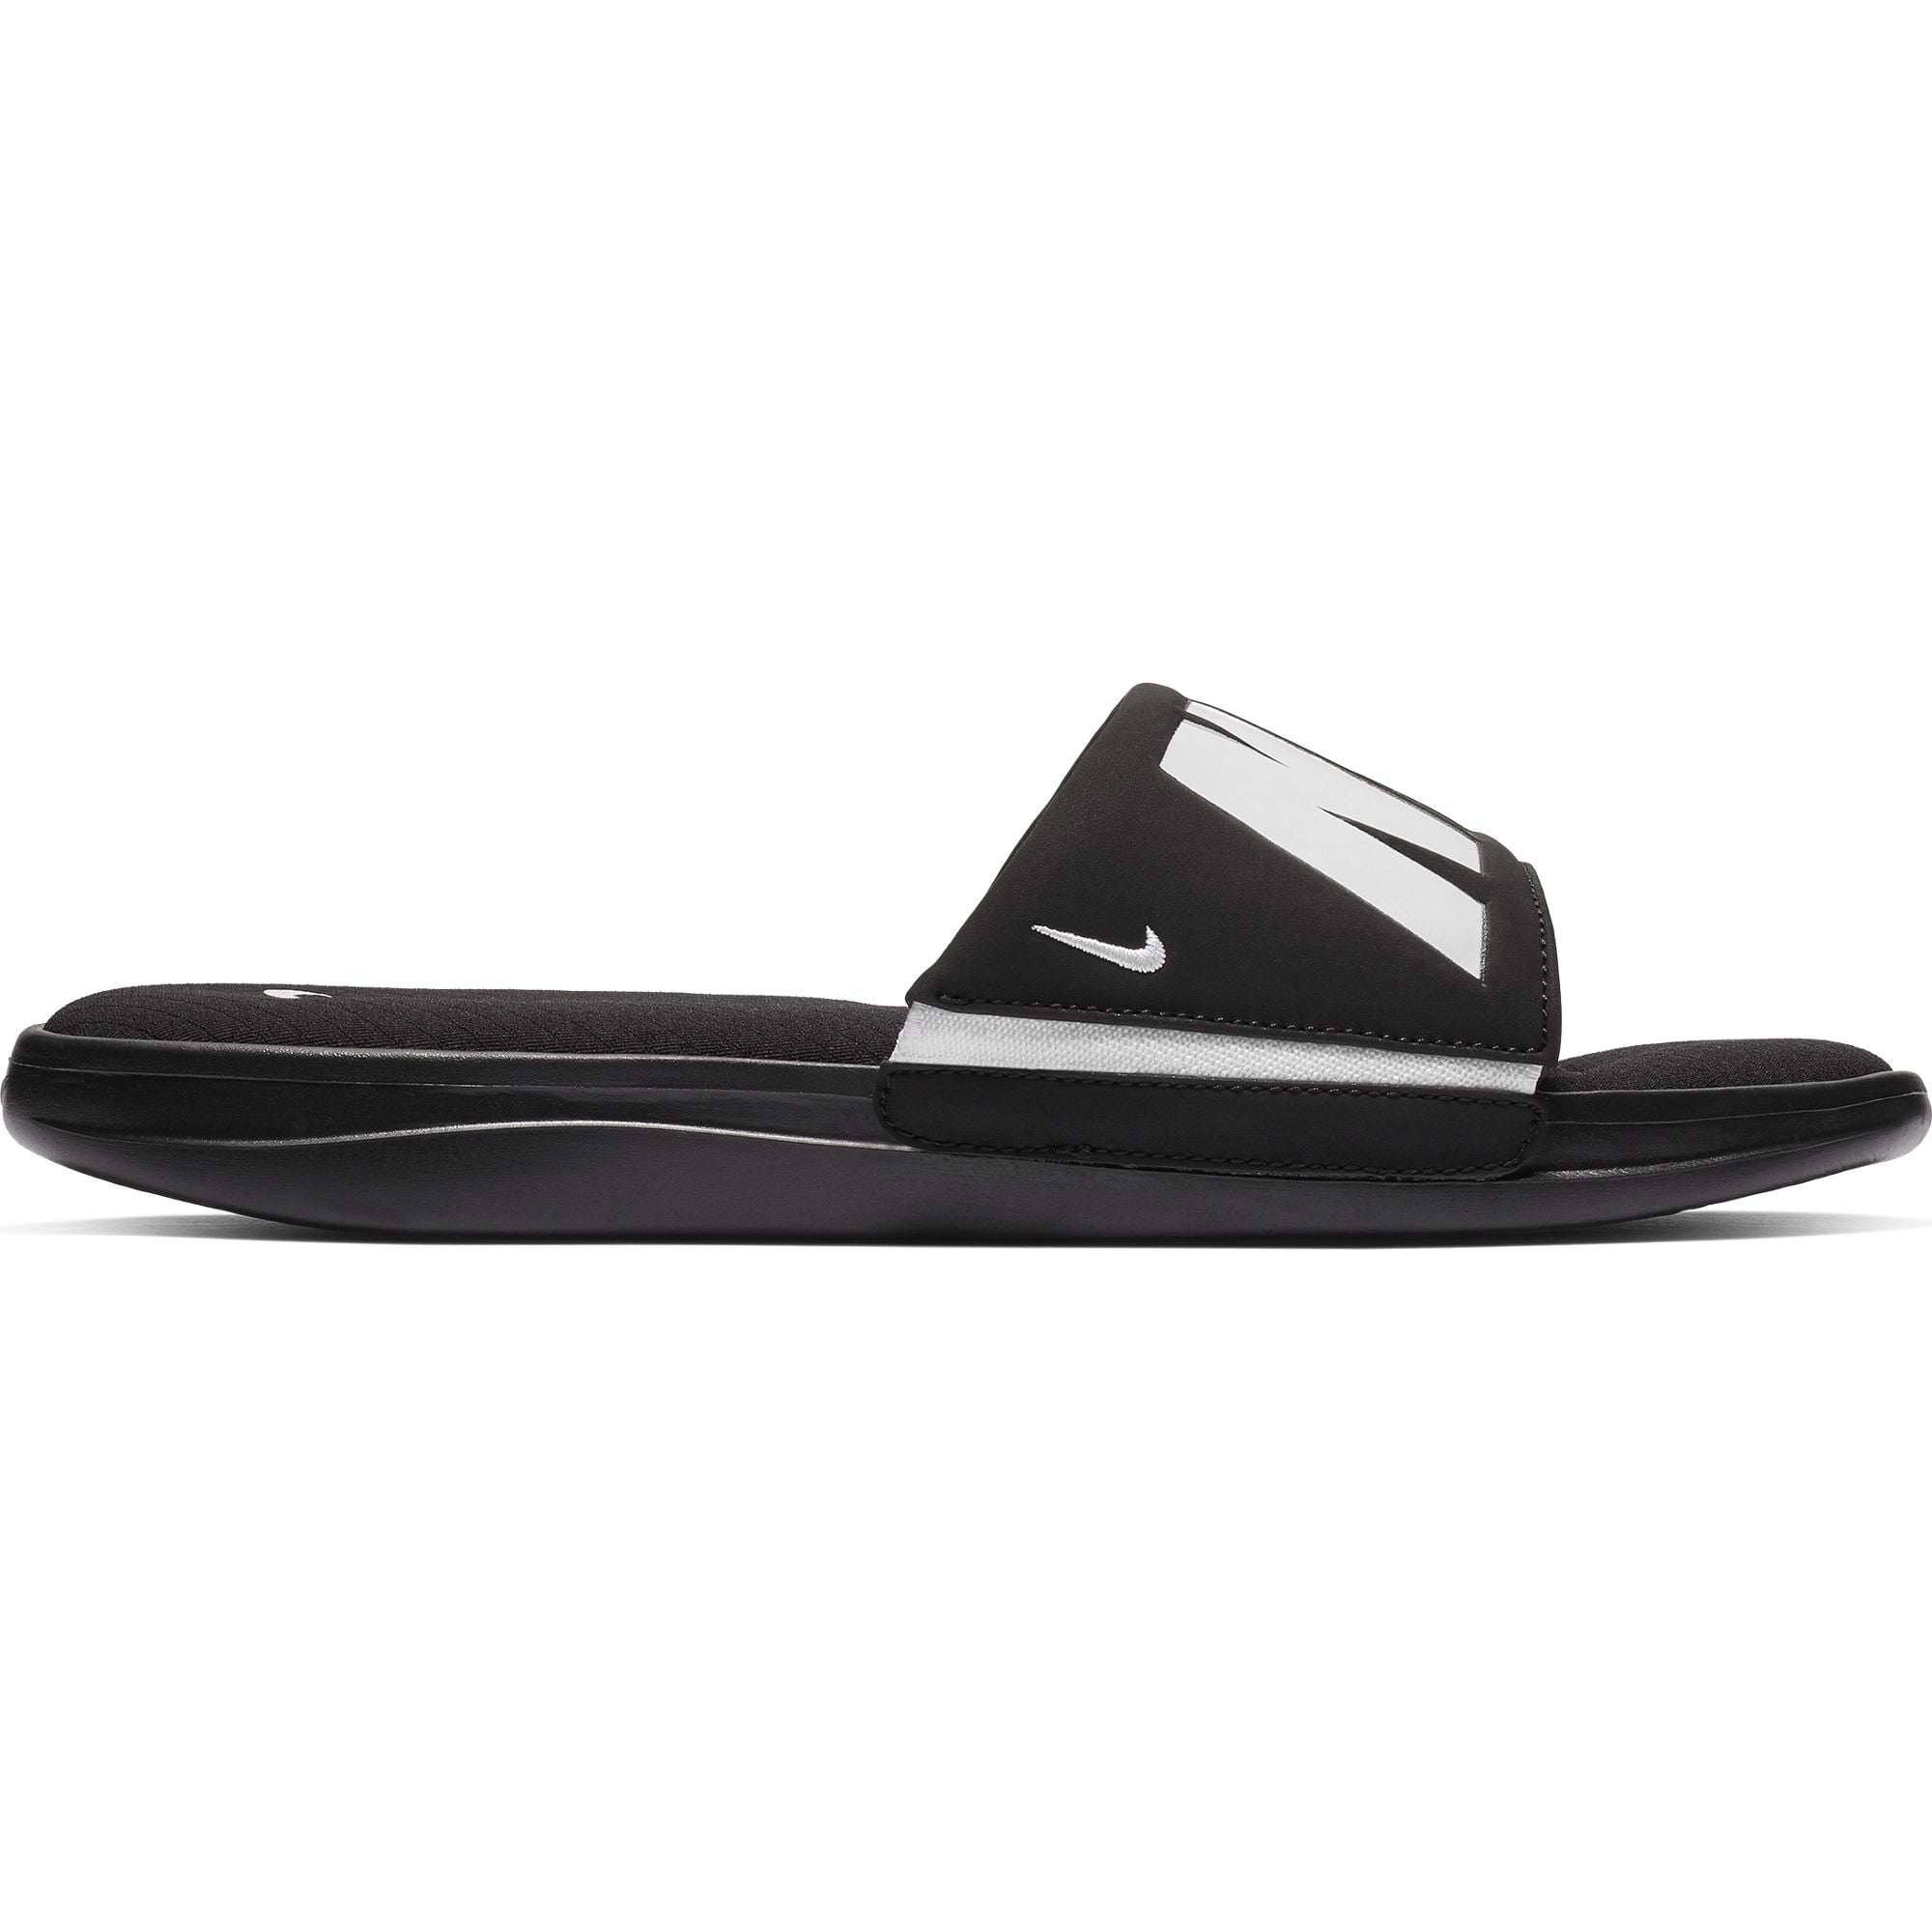 nike men's ultra comfort 3 slide sandal